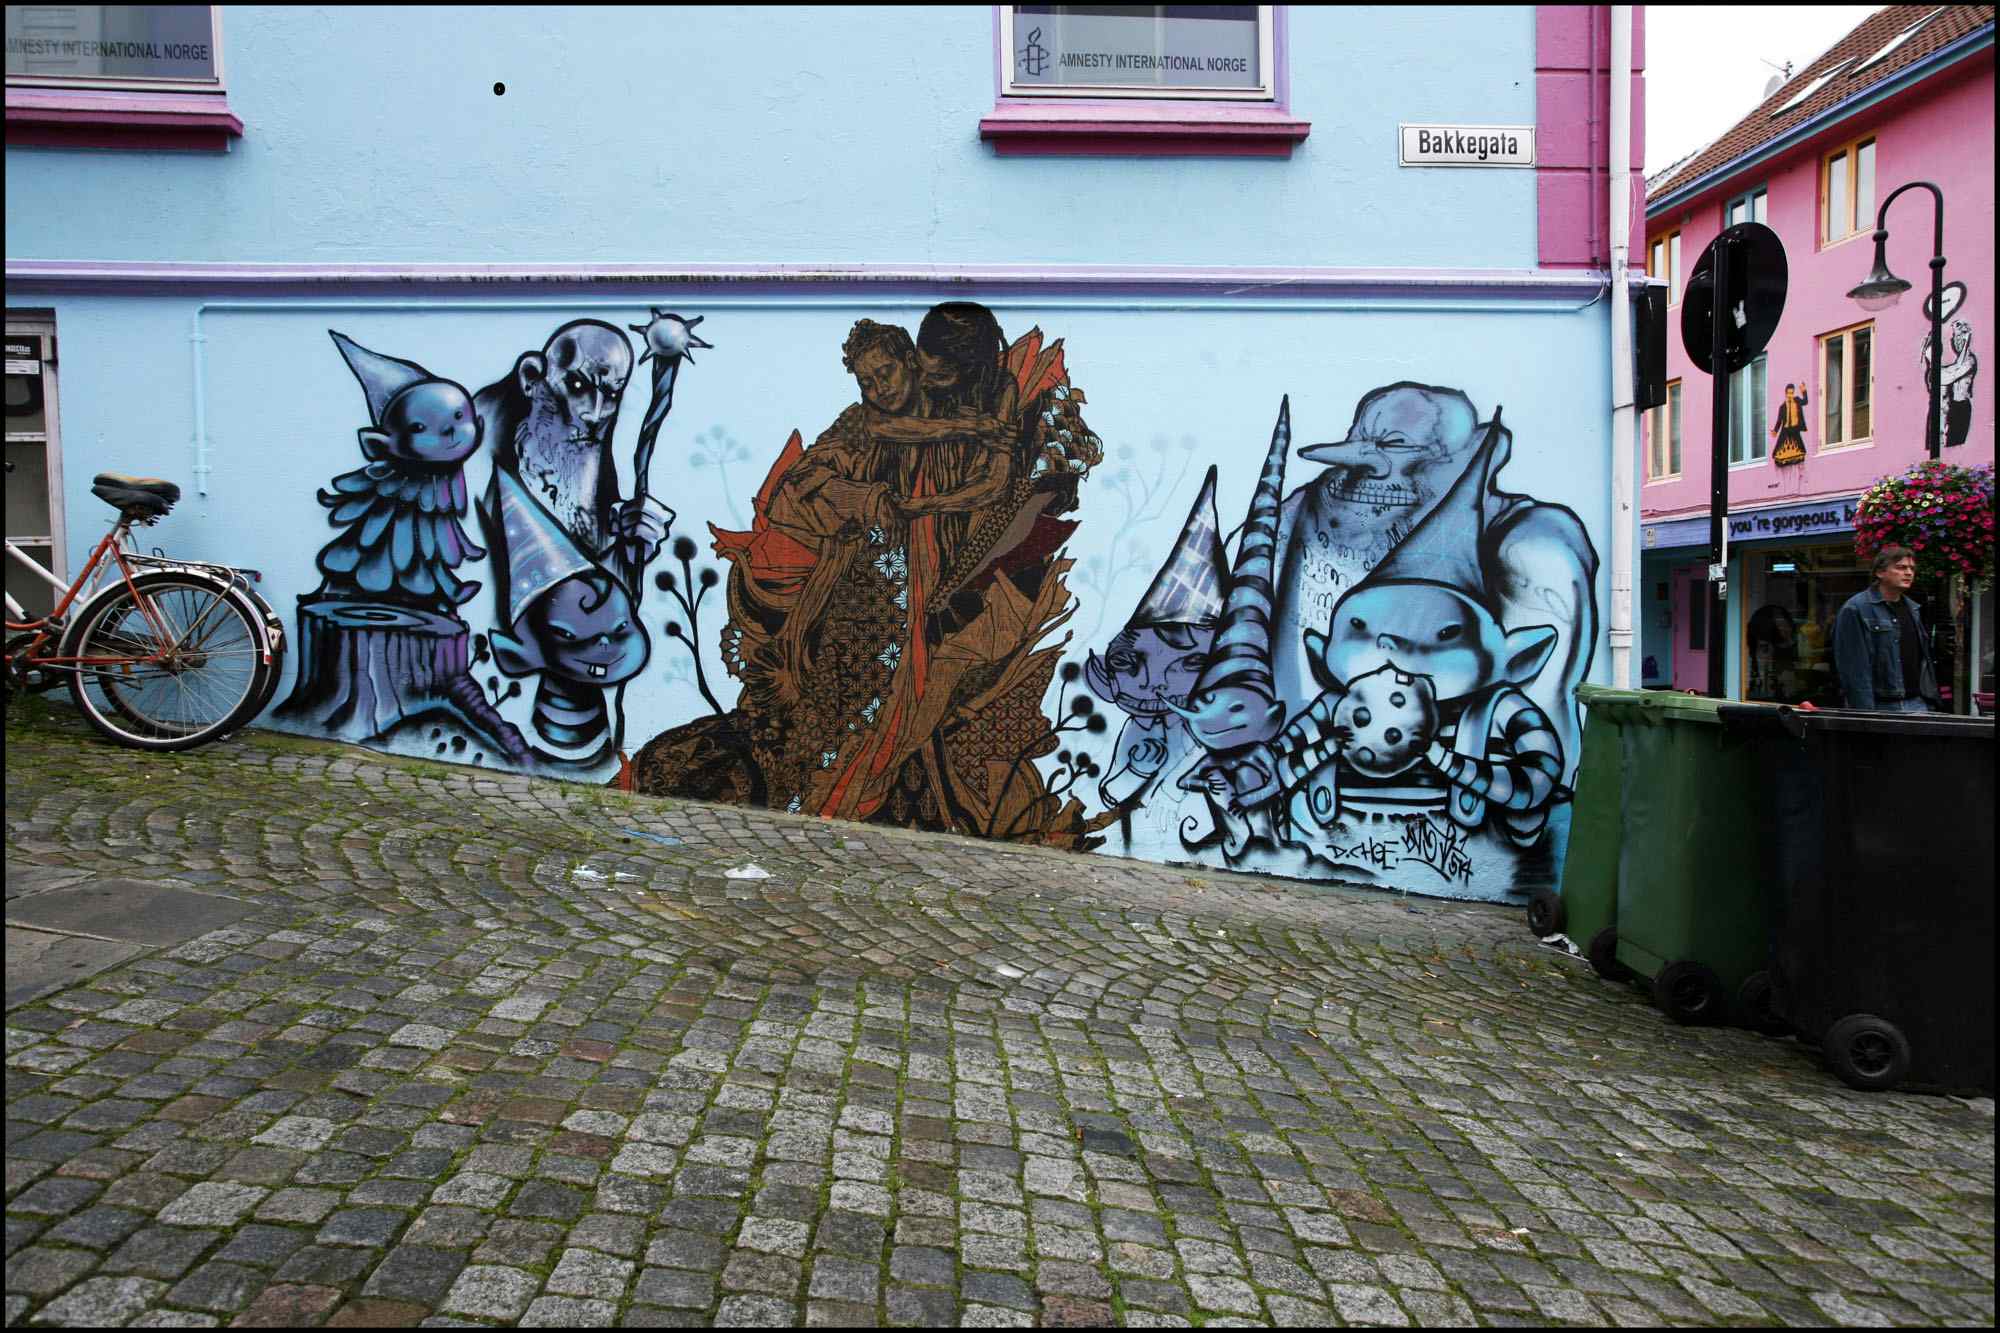 Stavanger Street Art: Untitled av David Choe og Swoon